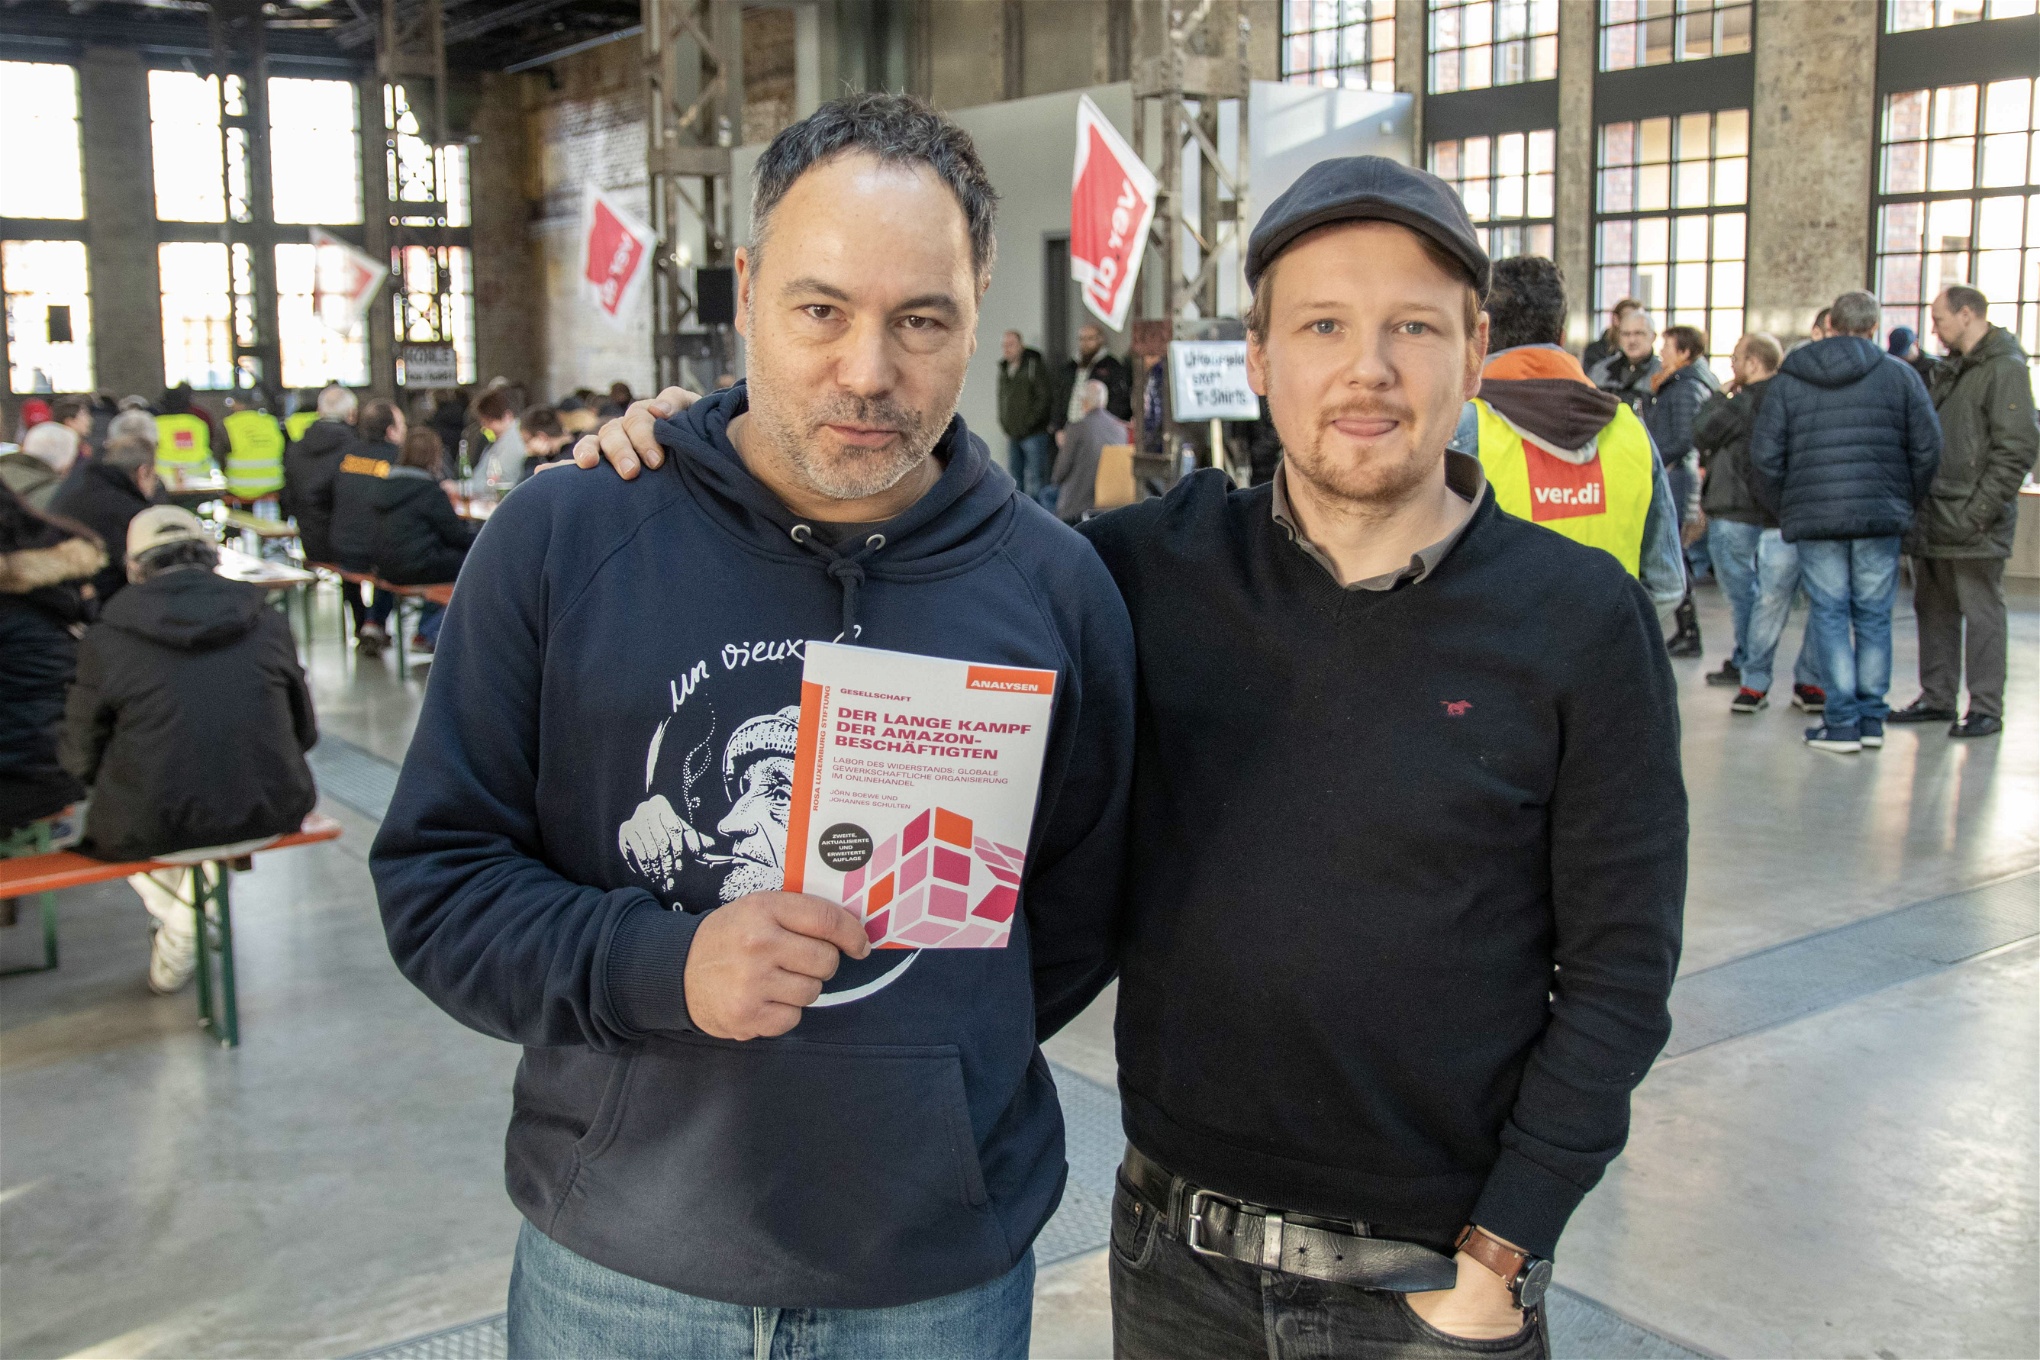 Journalisterna Jörn Boewe och Johannes Schulten höll en workshop i Bad Hersfeld under strejken. De färdigställde nyligen en rapport om Amazonarbetarnas organisering i Tyskland.